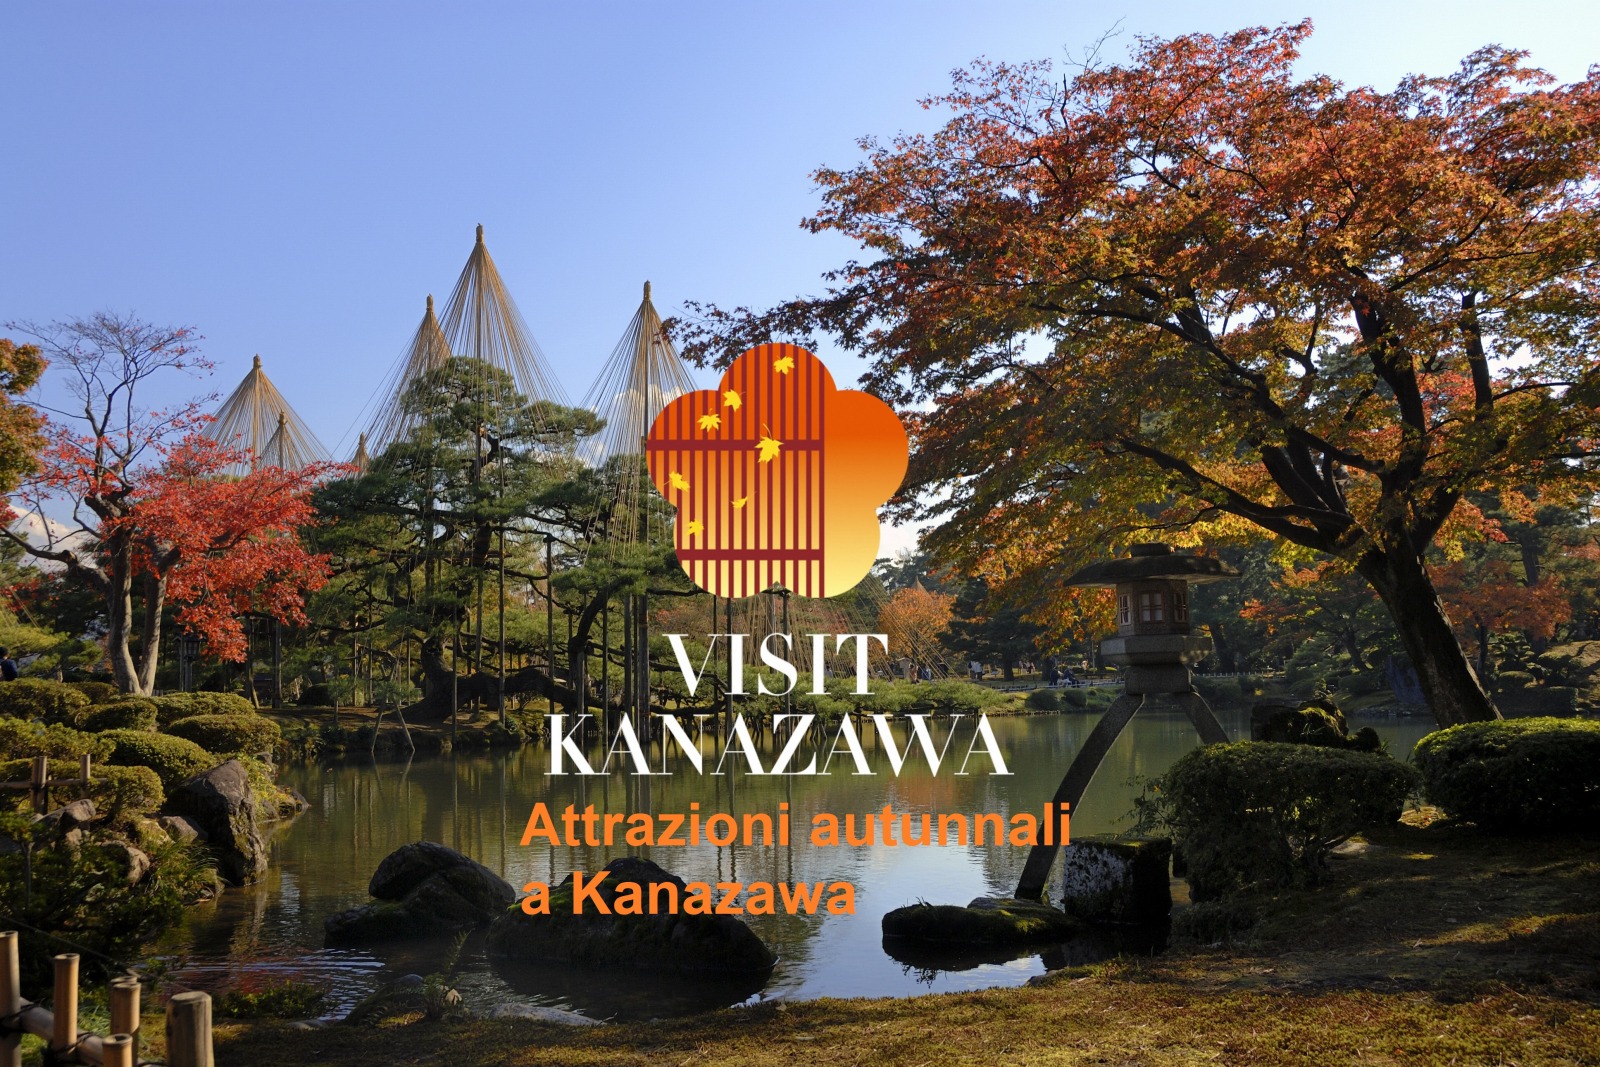 Attrazioni autunnali a Kanazawa